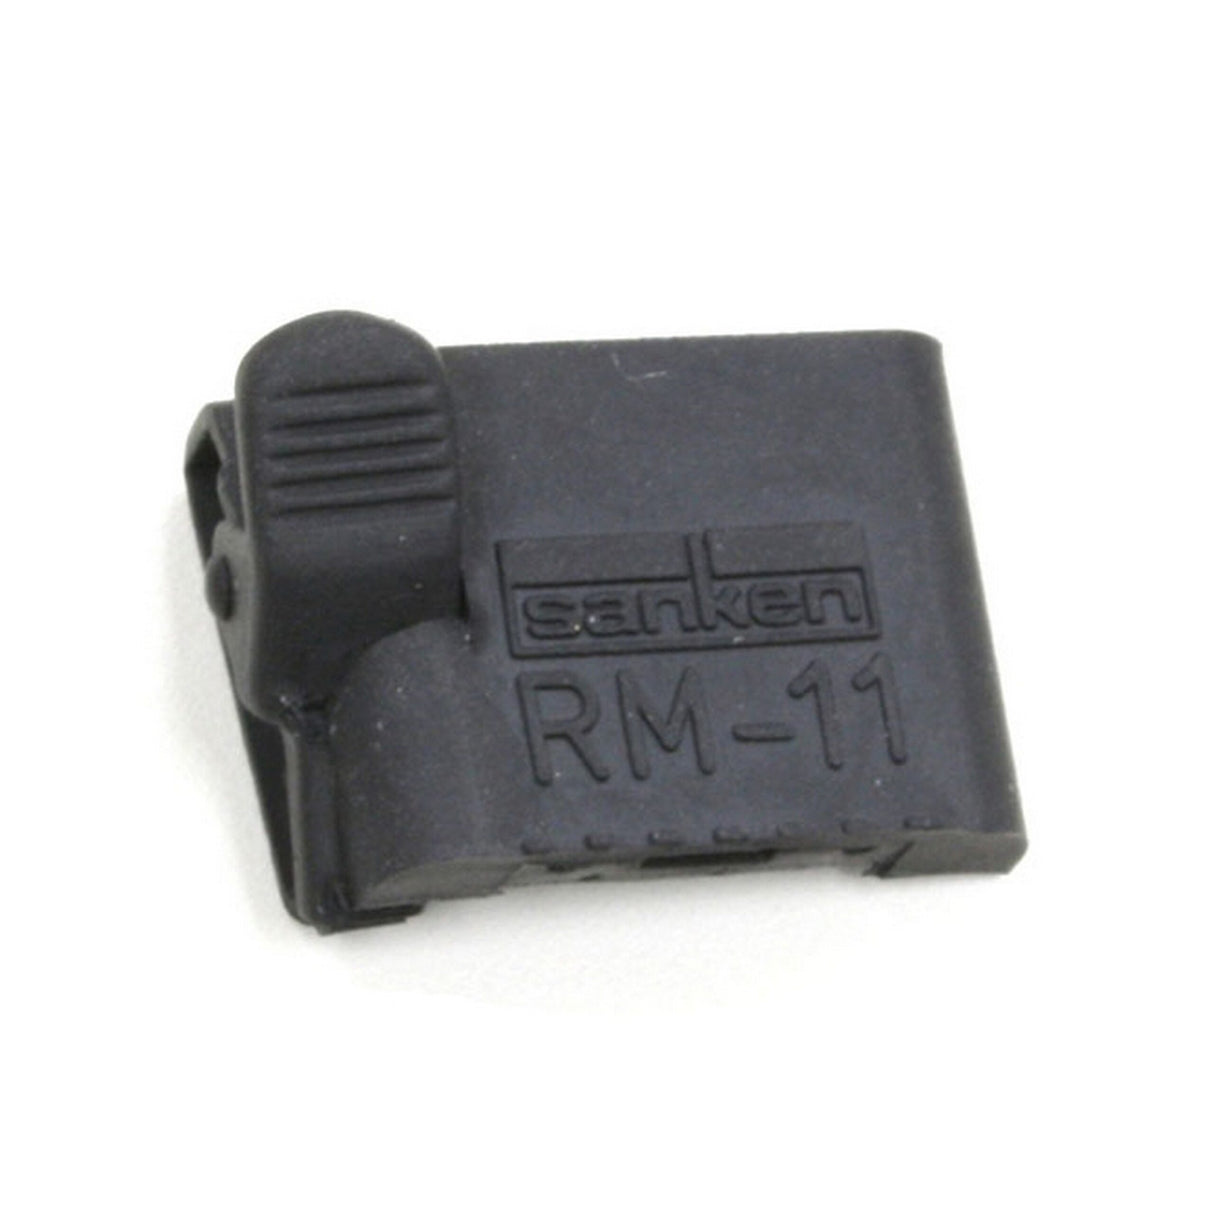 Sanken RM-11C-BK Rubber Mount with Clip, Black